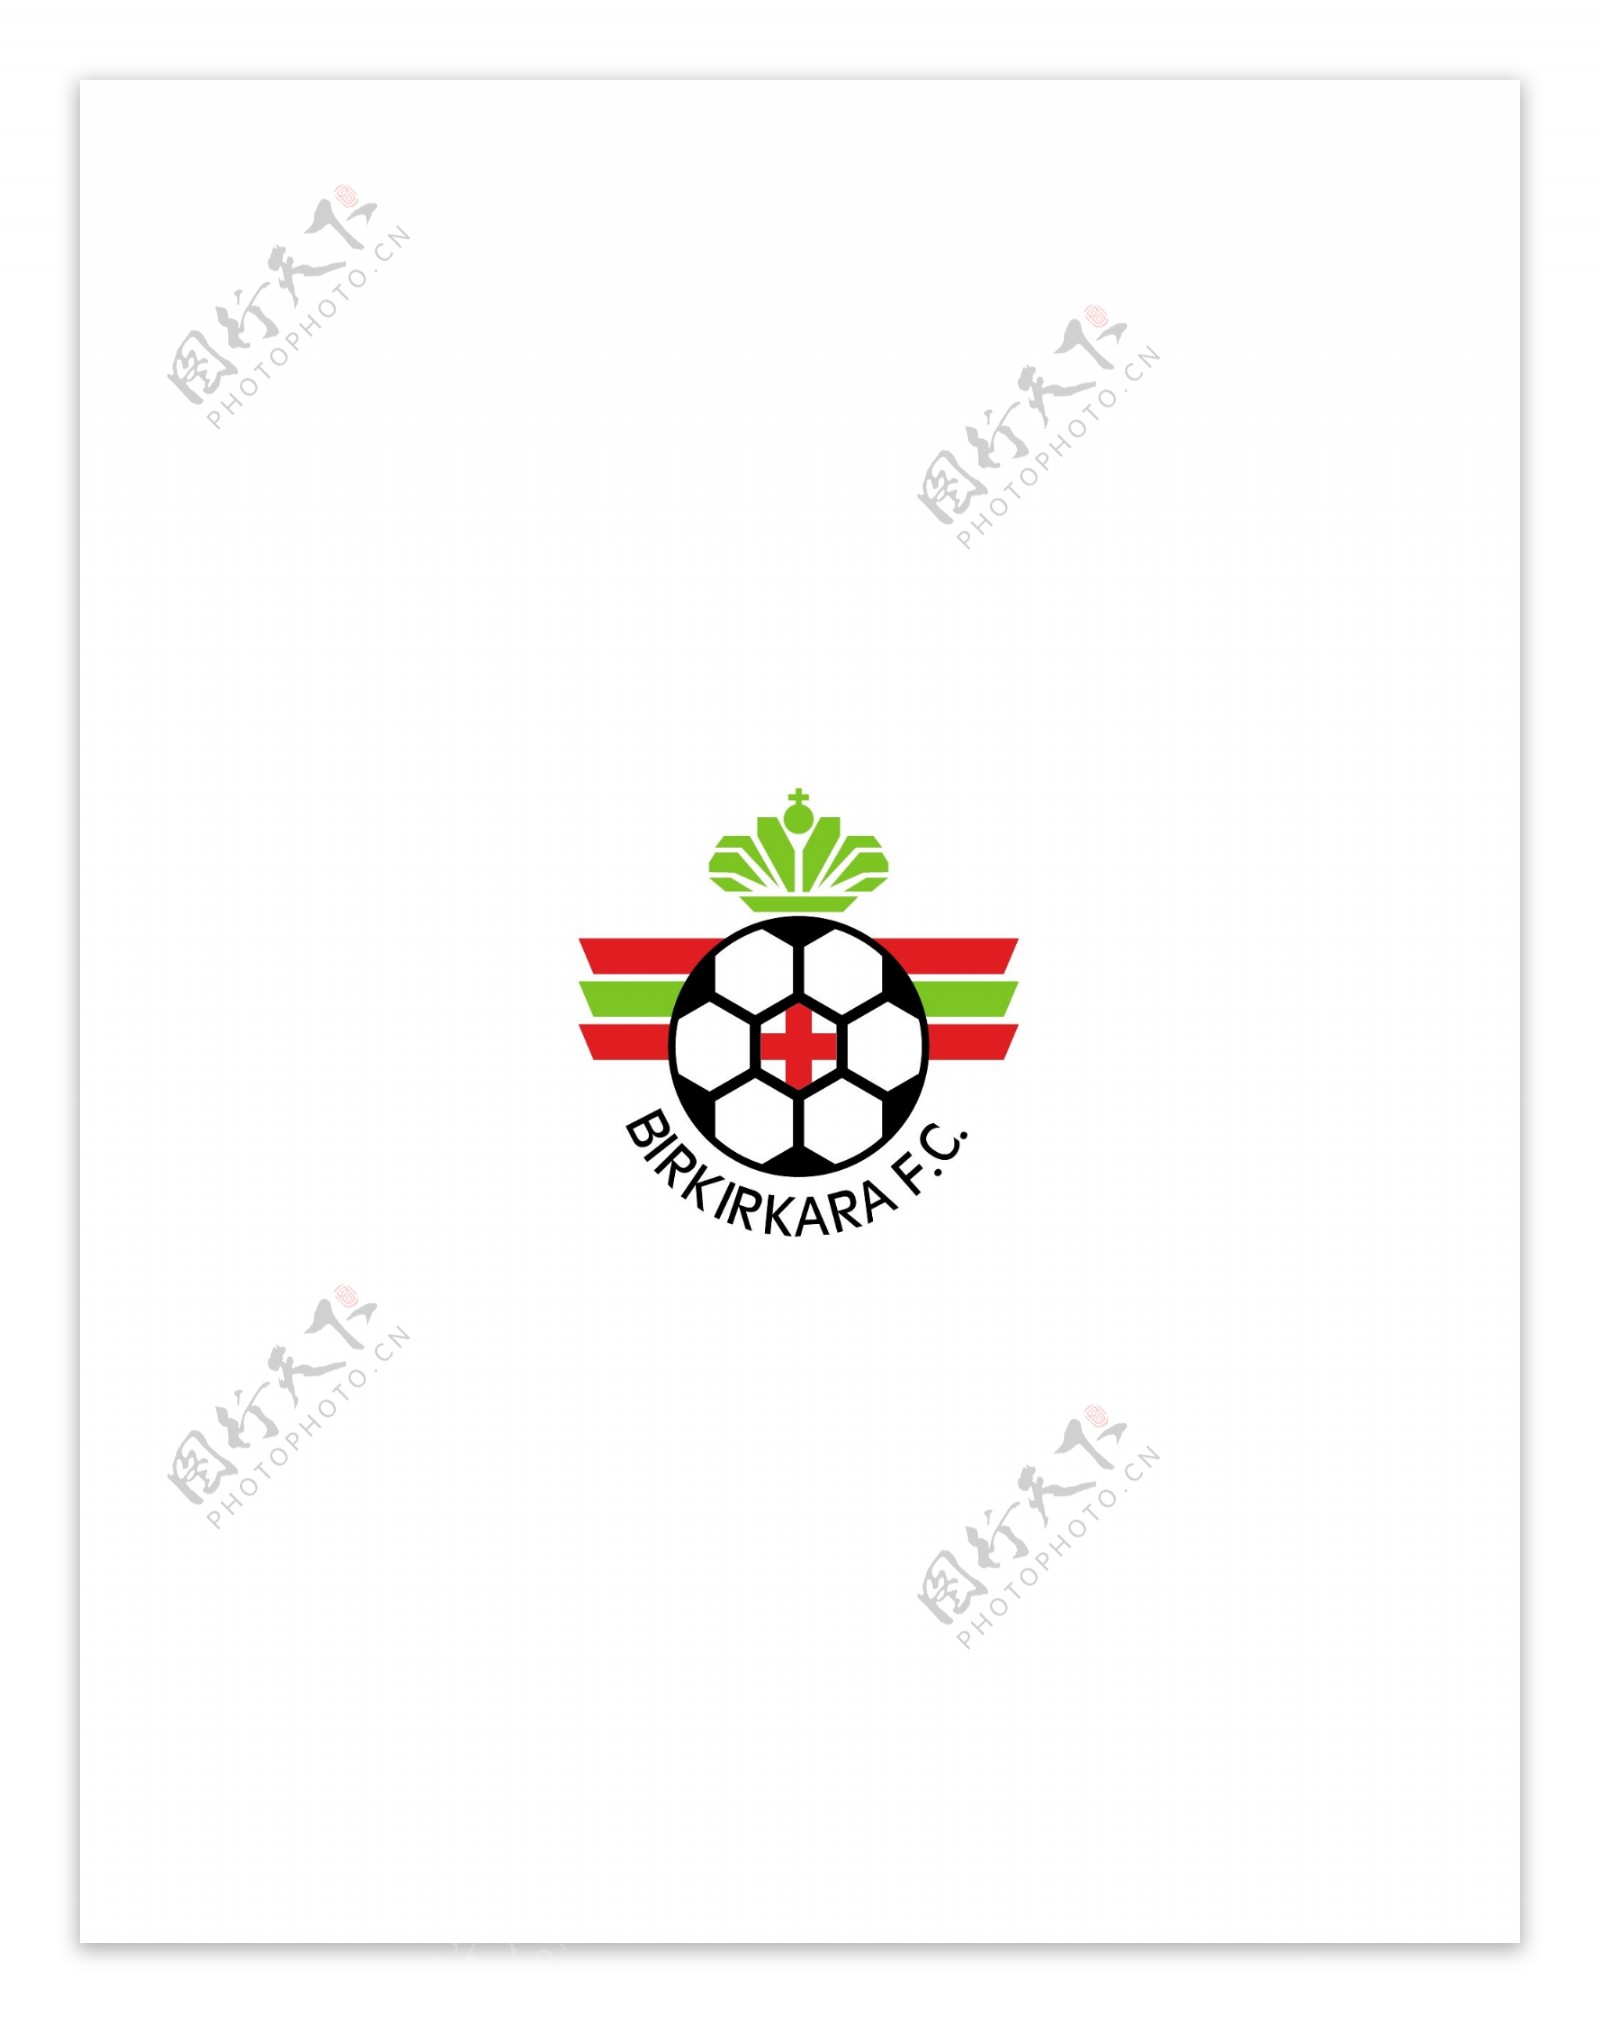 Birkirkaralogo设计欣赏足球和娱乐相关标志Birkirkara下载标志设计欣赏